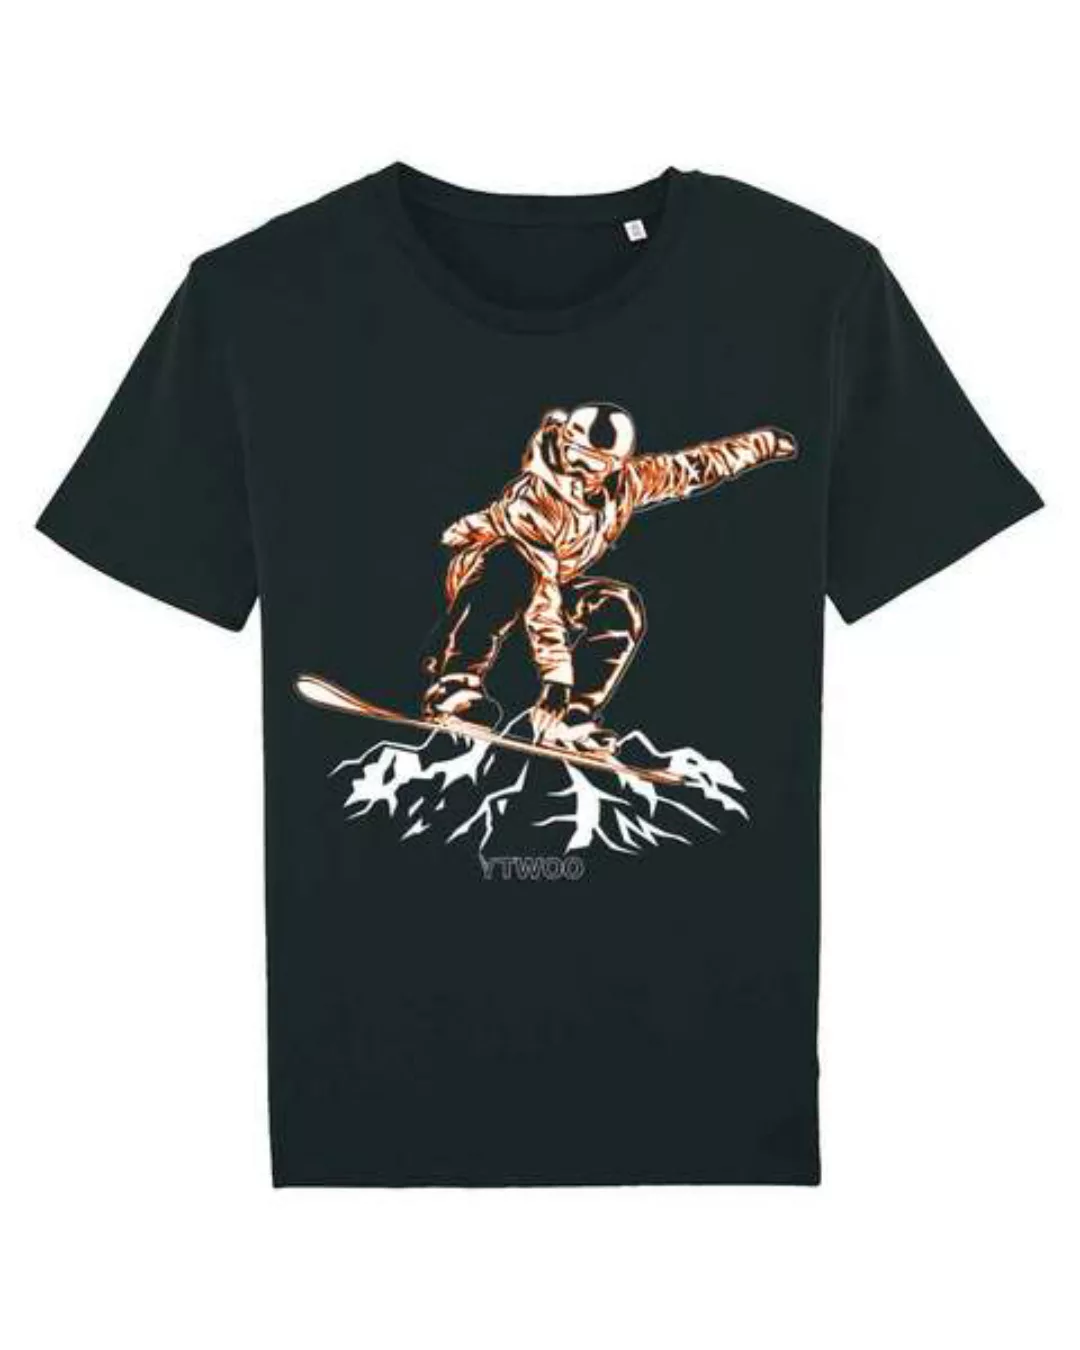 Bio Tshirt Mit Snowbord In Indy Grab Style Als Motiv. Bio Shirt günstig online kaufen